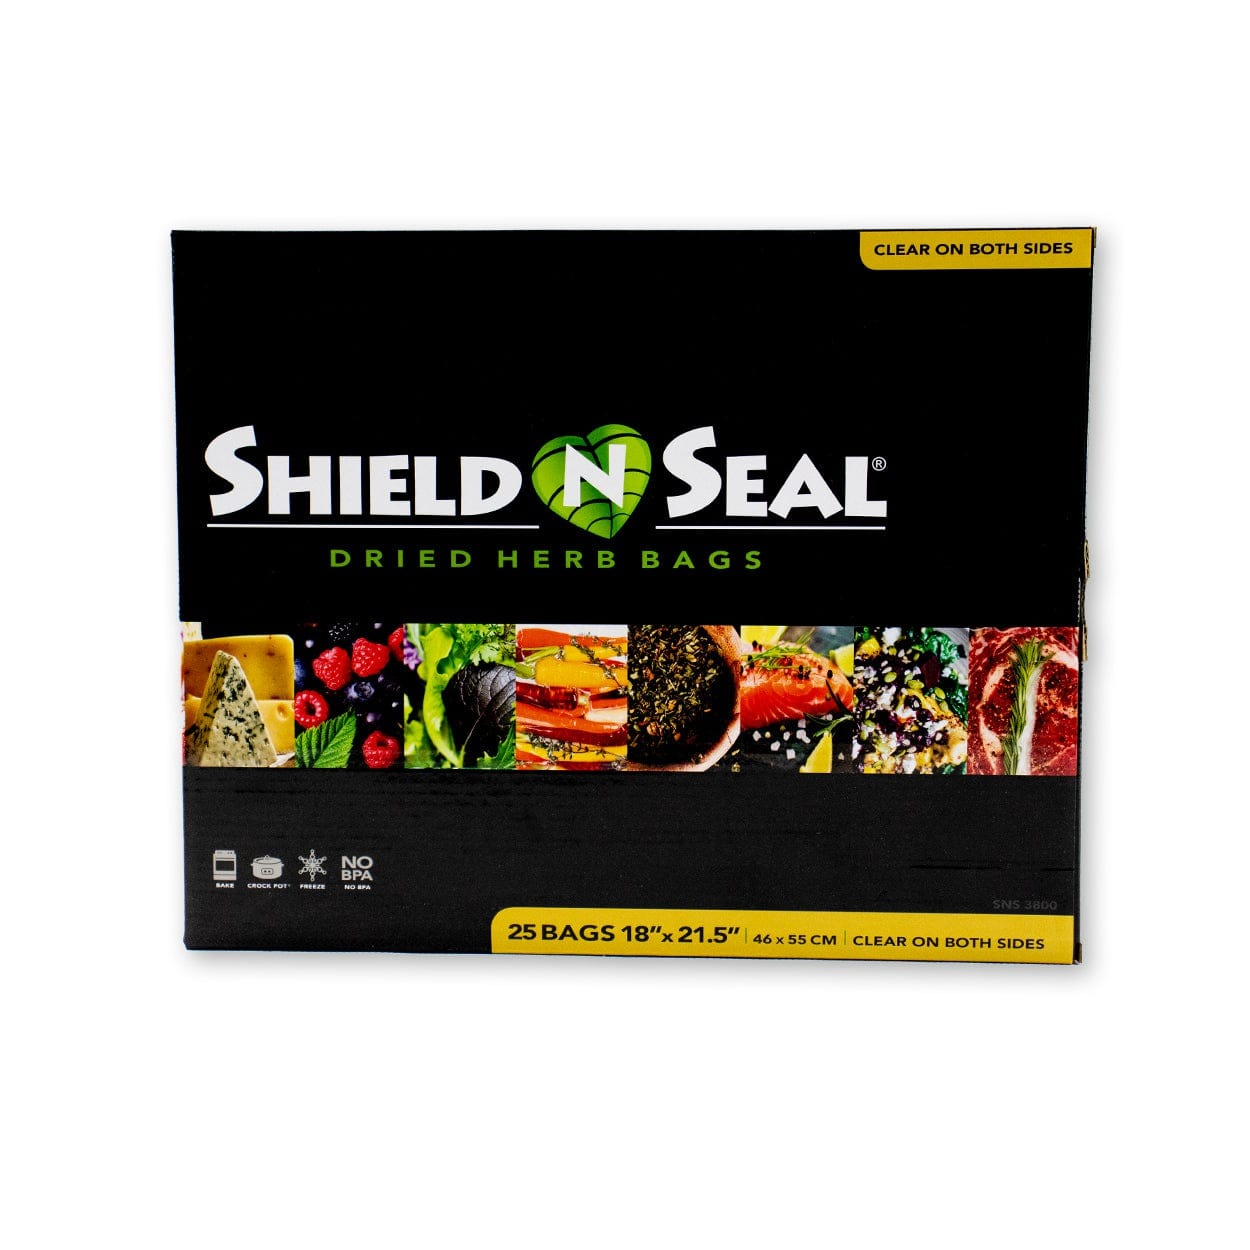 Shield N Seal 1lb Turkey Bag (18" x 21.5" / Box of 25)